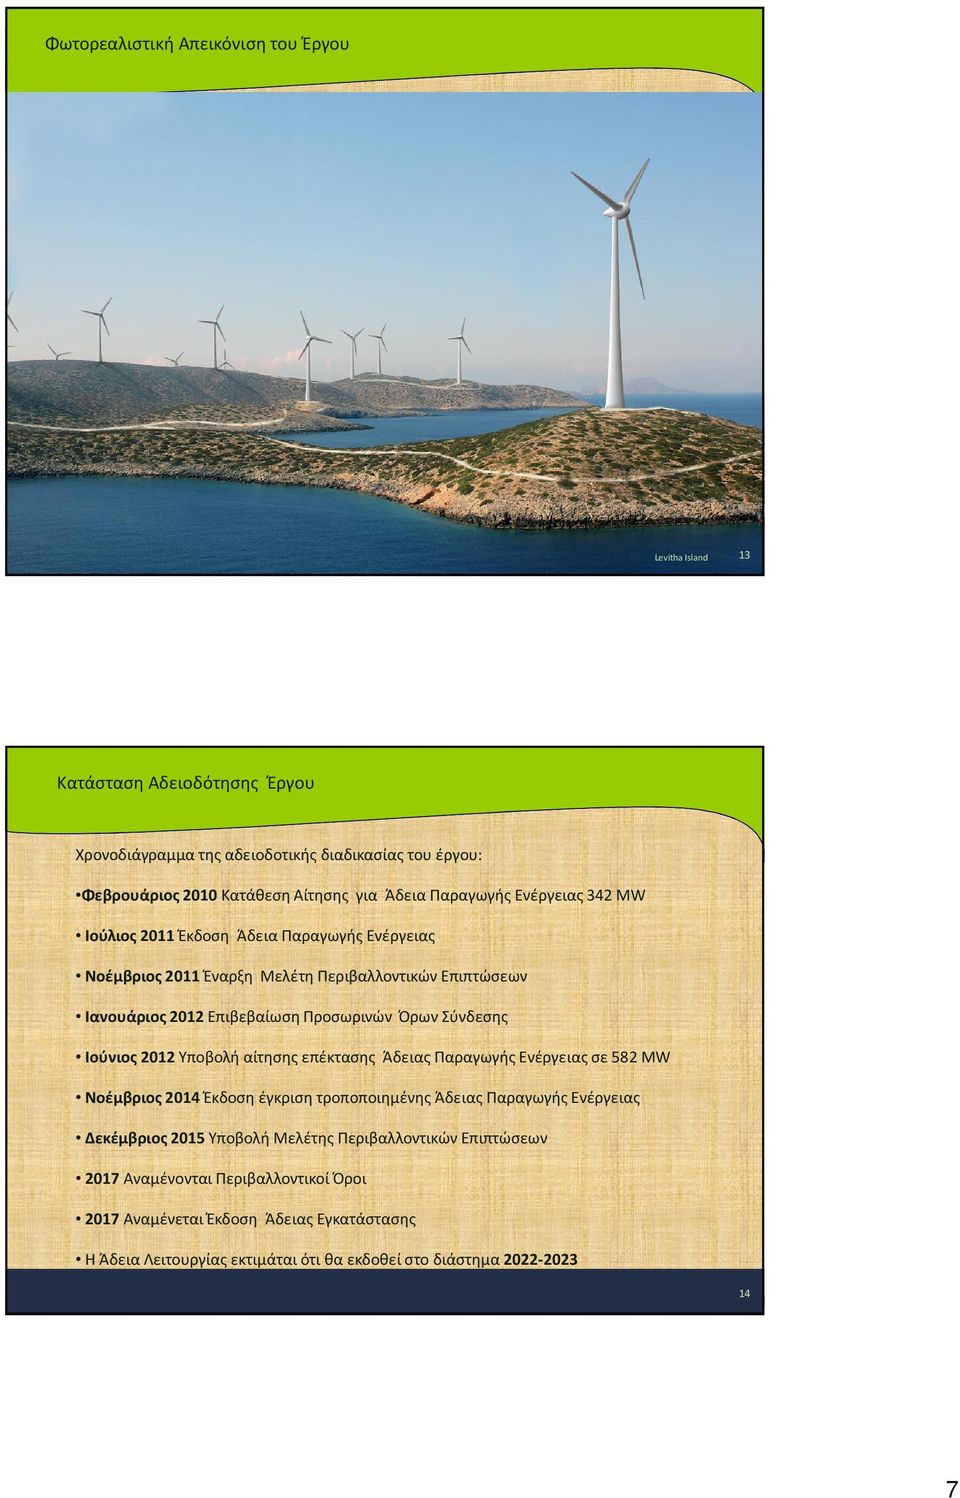 Σύνδεσης Ιούνιος 2012 Υποβολή αίτησης επέκτασης Άδειας Παραγωγής Ενέργειας σε 582 MW Νοέμβριος 2014 Έκδοση έγκριση τροποποιημένης Άδειας Παραγωγής Ενέργειας Δεκέμβριος 2015 Υποβολή